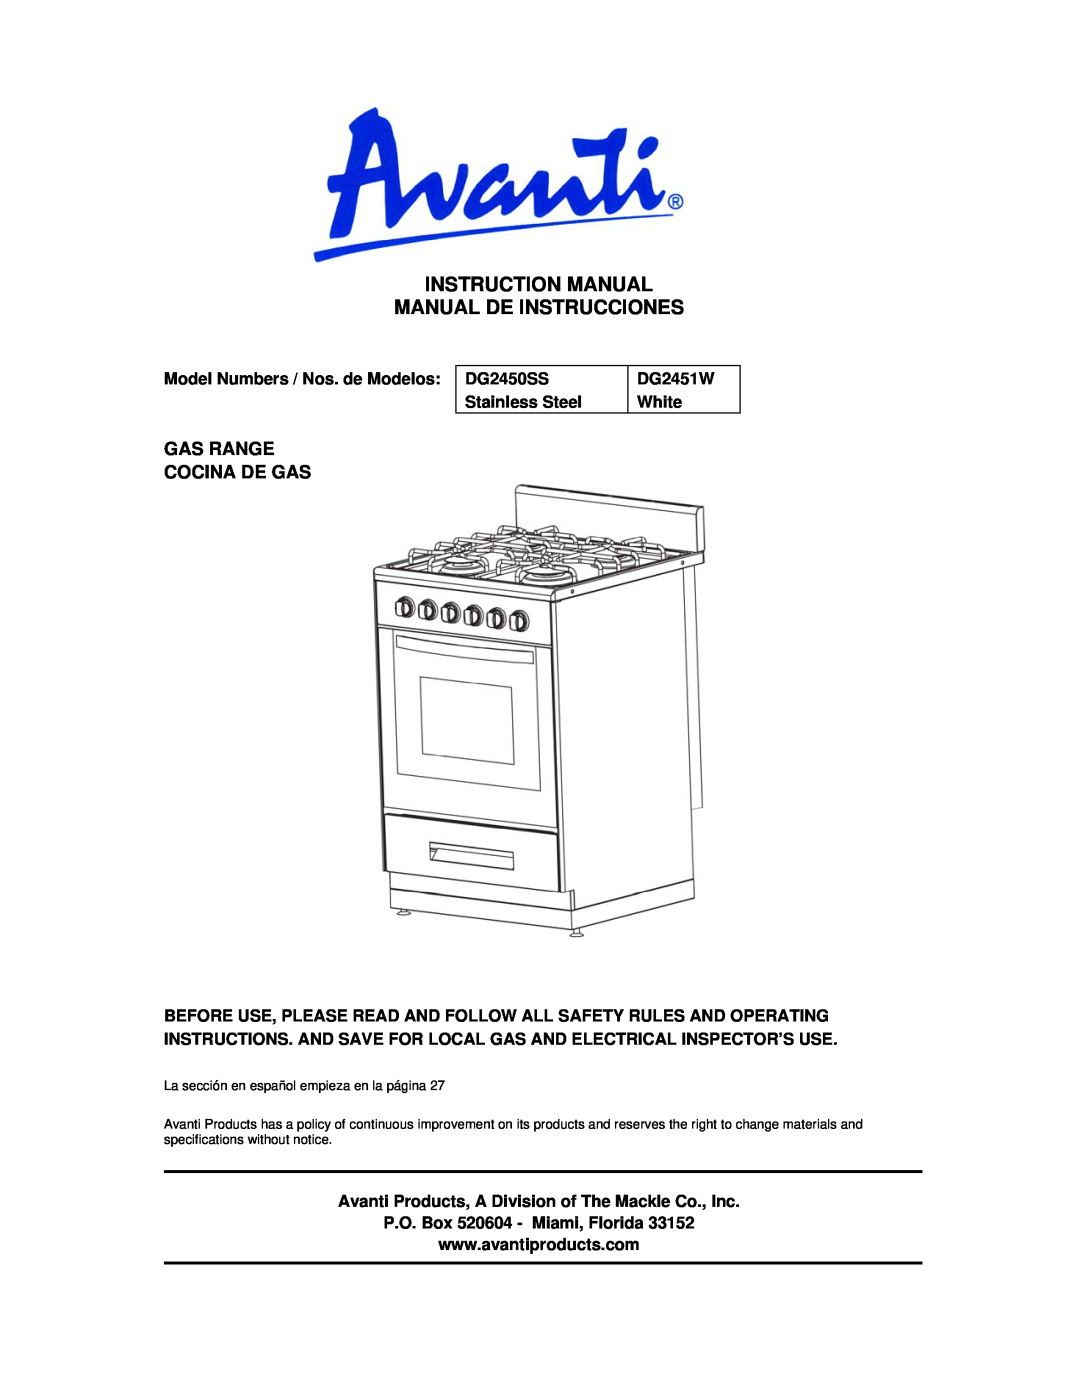 Avanti instruction manual Gas Range Cocina De Gas, DG2450SS Stainless Steel, La sección en español empieza en la página 